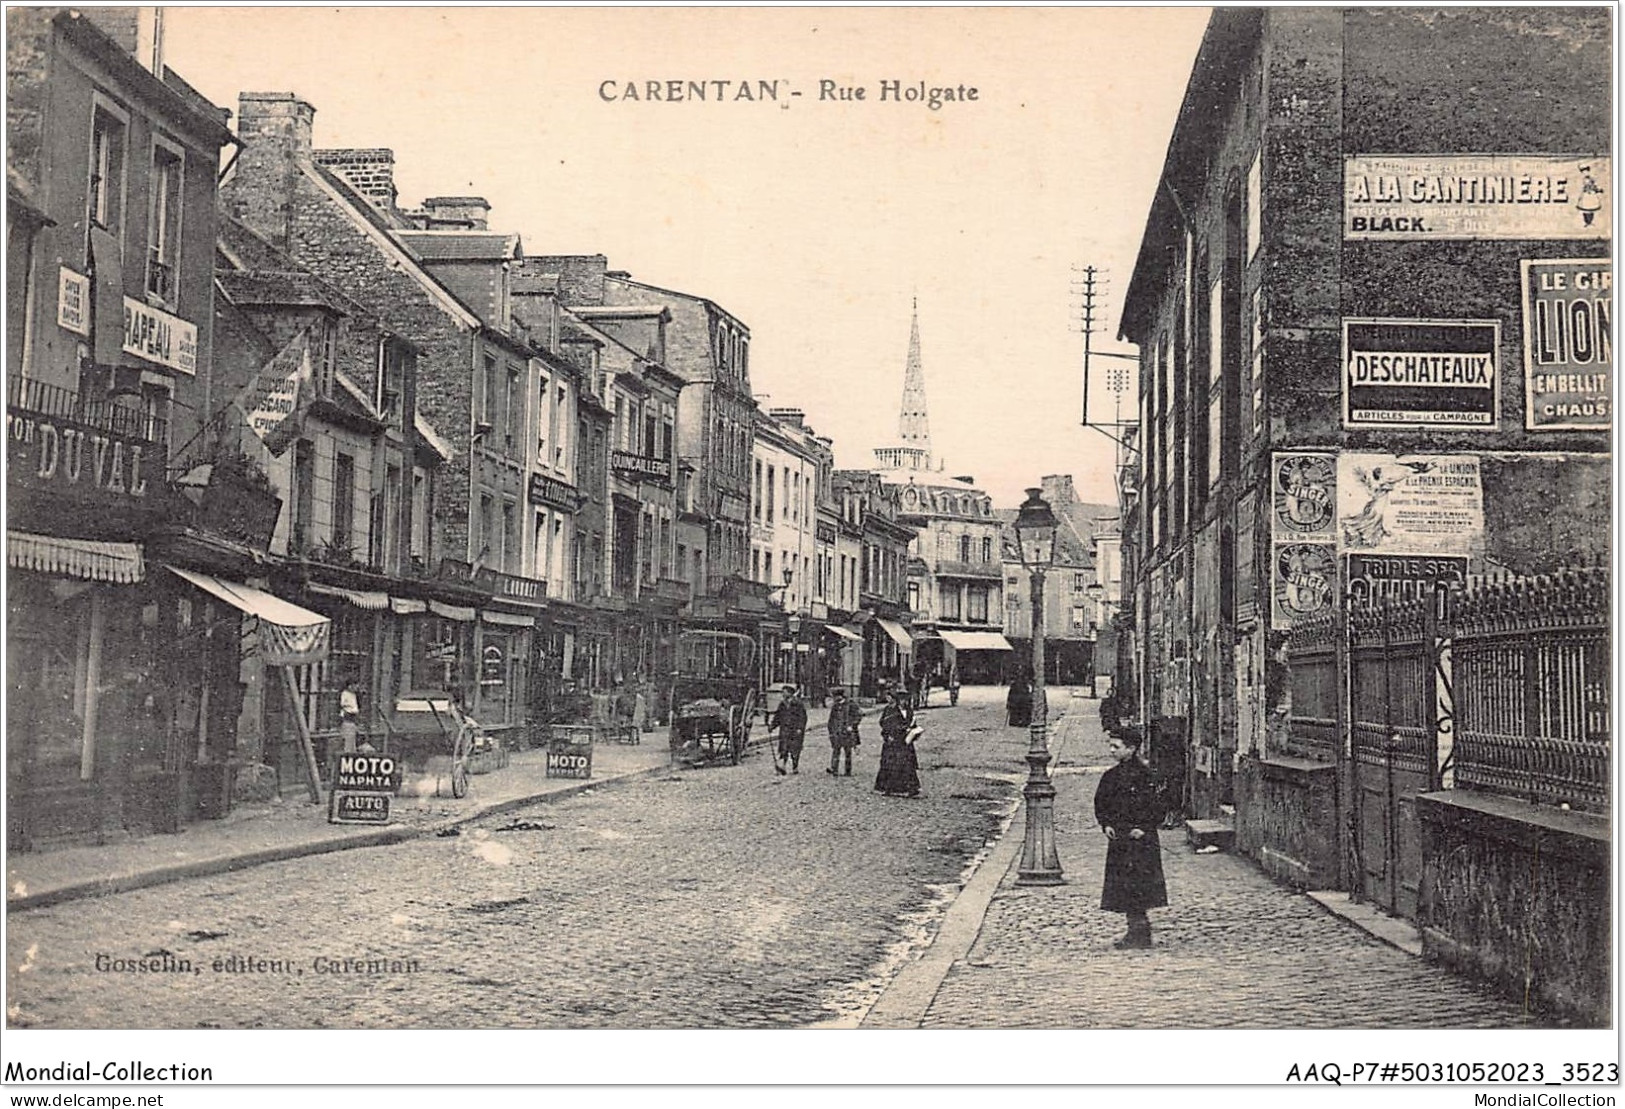 AAQP7-50-0546 - CARENTON - Rue Holgate - Carentan